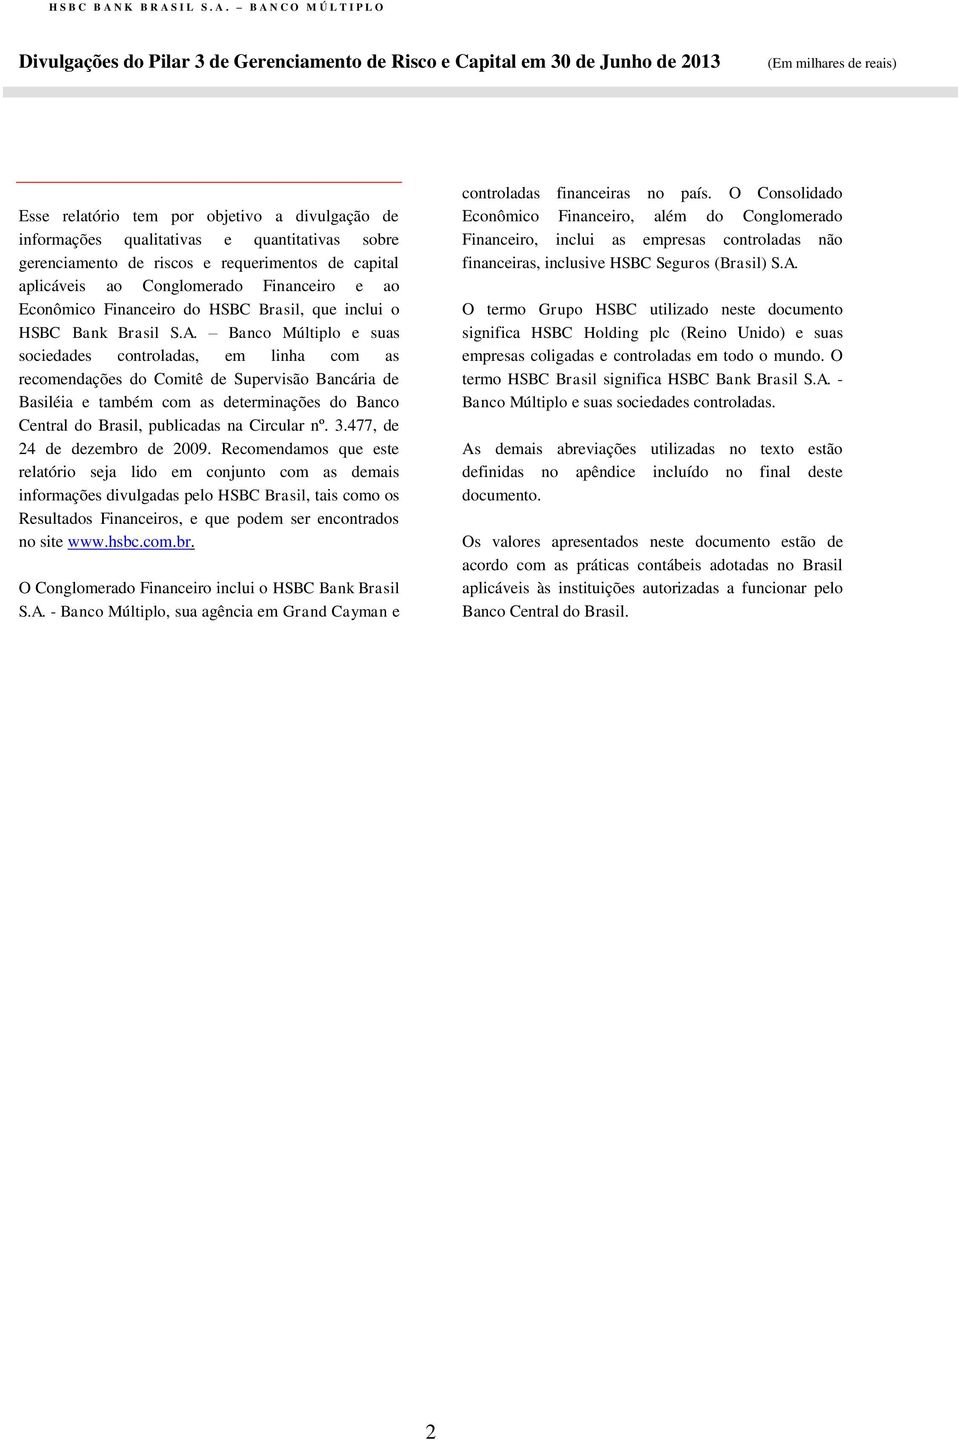 Banco Múltiplo e suas sociedades controladas, em linha com as recomendações do Comitê de Supervisão Bancária de Basiléia e também com as determinações do Banco Central do Brasil, publicadas na